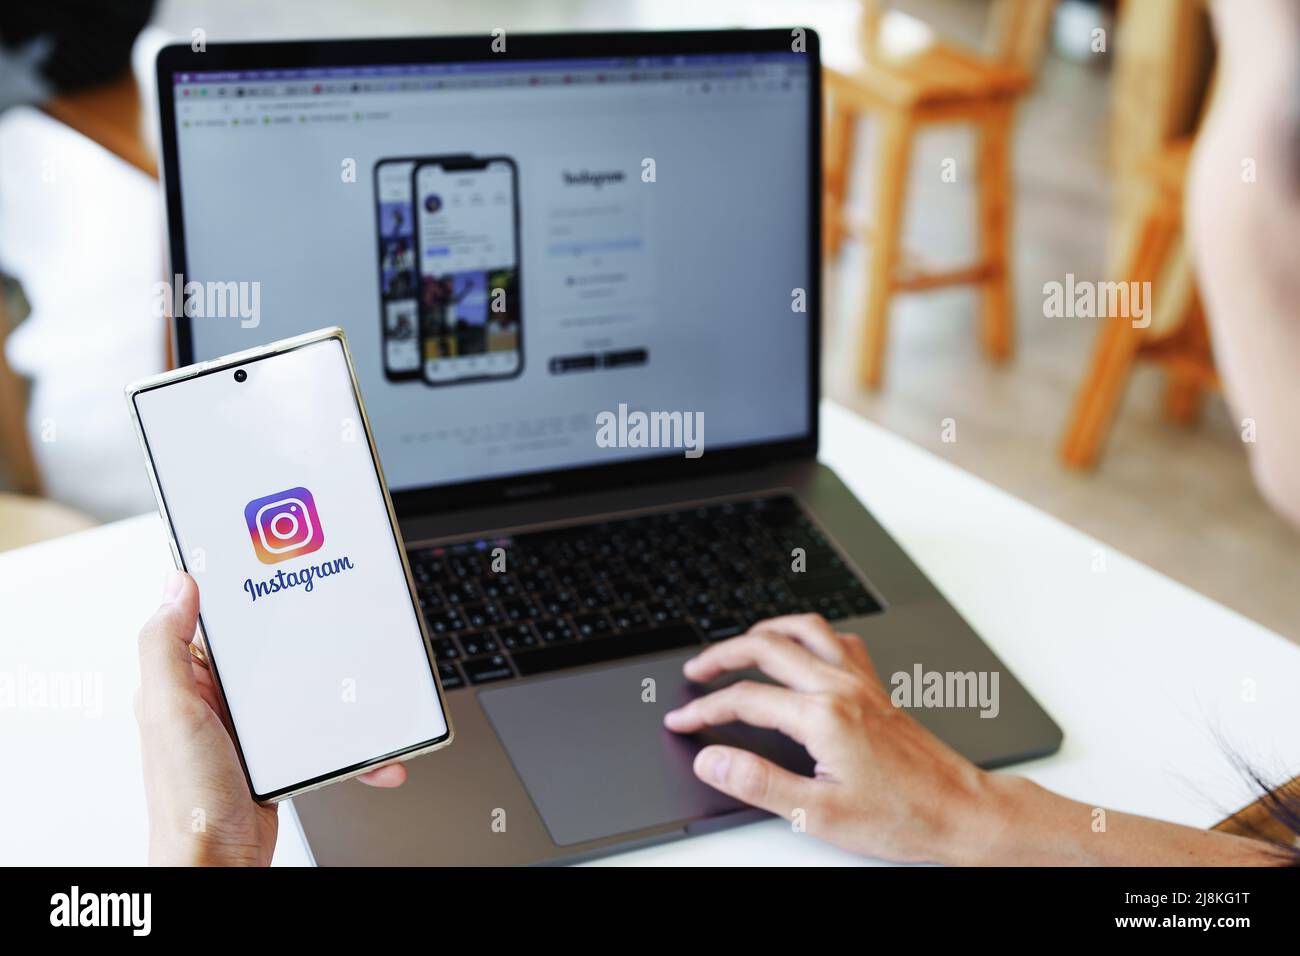 CHIANG MAI, THAILAND - 13. Mai 2022 : Frau Hand hält Smartphone-Handy mit Login-Bildschirm der instagram-Anwendung. Instagram ist am größten und am meisten Stockfoto